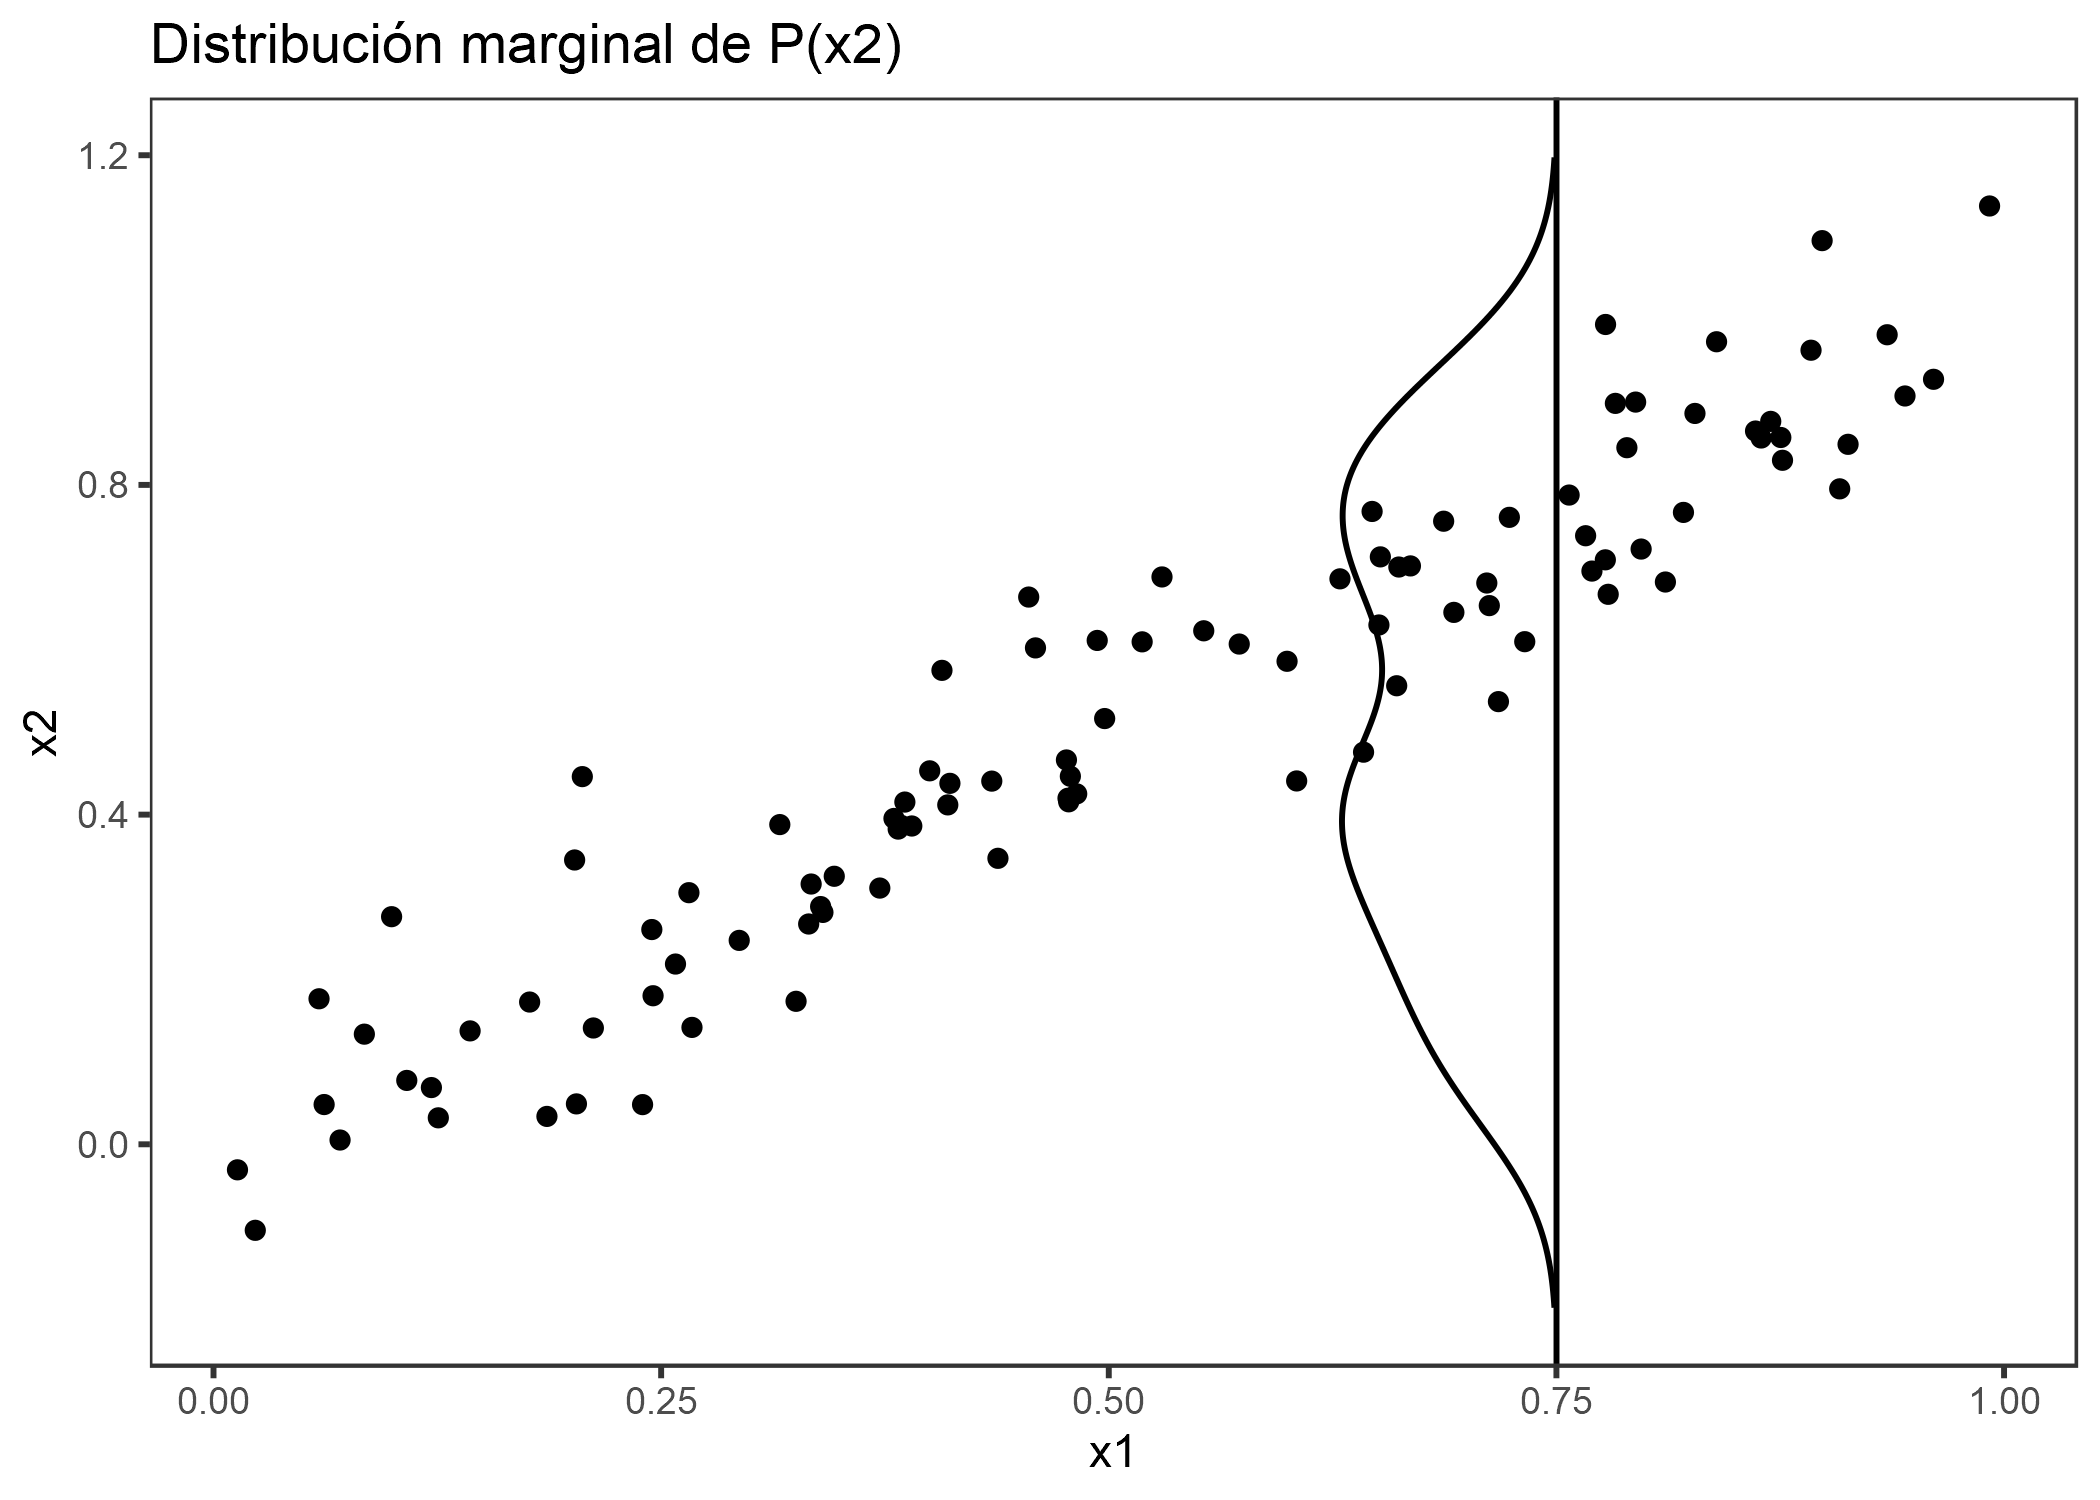 Características fuertemente correlacionadas x1 y x2. Para calcular el efecto de función de x1 en 0.75, el PDP reemplaza x1 de todas las instancias con 0.75, suponiendo falsamente que la distribución de x2 en x1 = 0.75 es lo mismo que la distribución marginal de x2 (línea vertical). Esto da como resultado combinaciones poco probables de x1 y x2 (p. Ej. X2 = 0.2 en x1 = 0.75), que el PDP usa para calcular el efecto promedio.